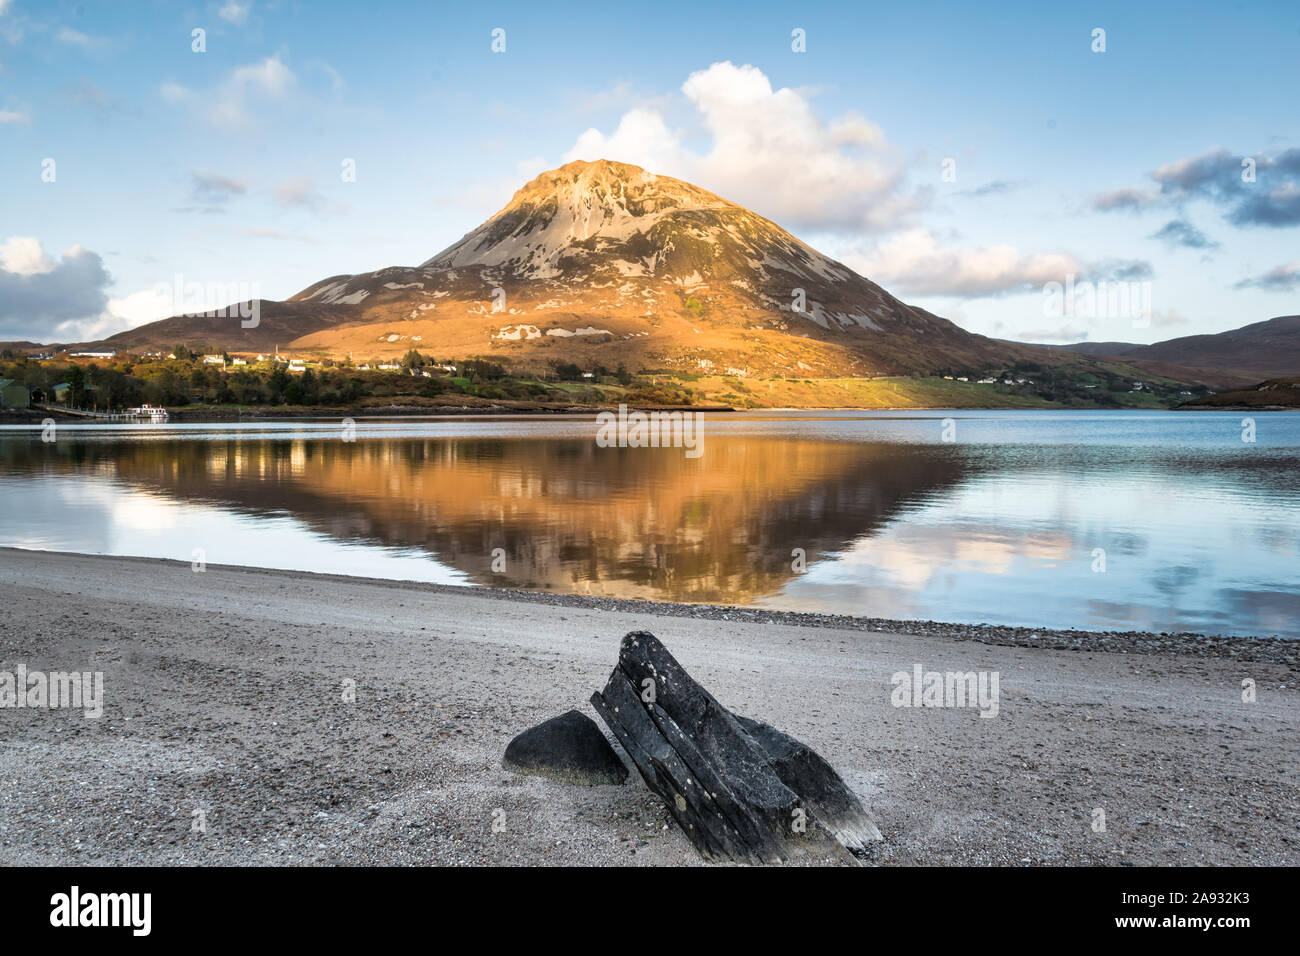 Errigal Mountain à Donegal en Irlande se reflète dans un lac en face de la montagne Banque D'Images